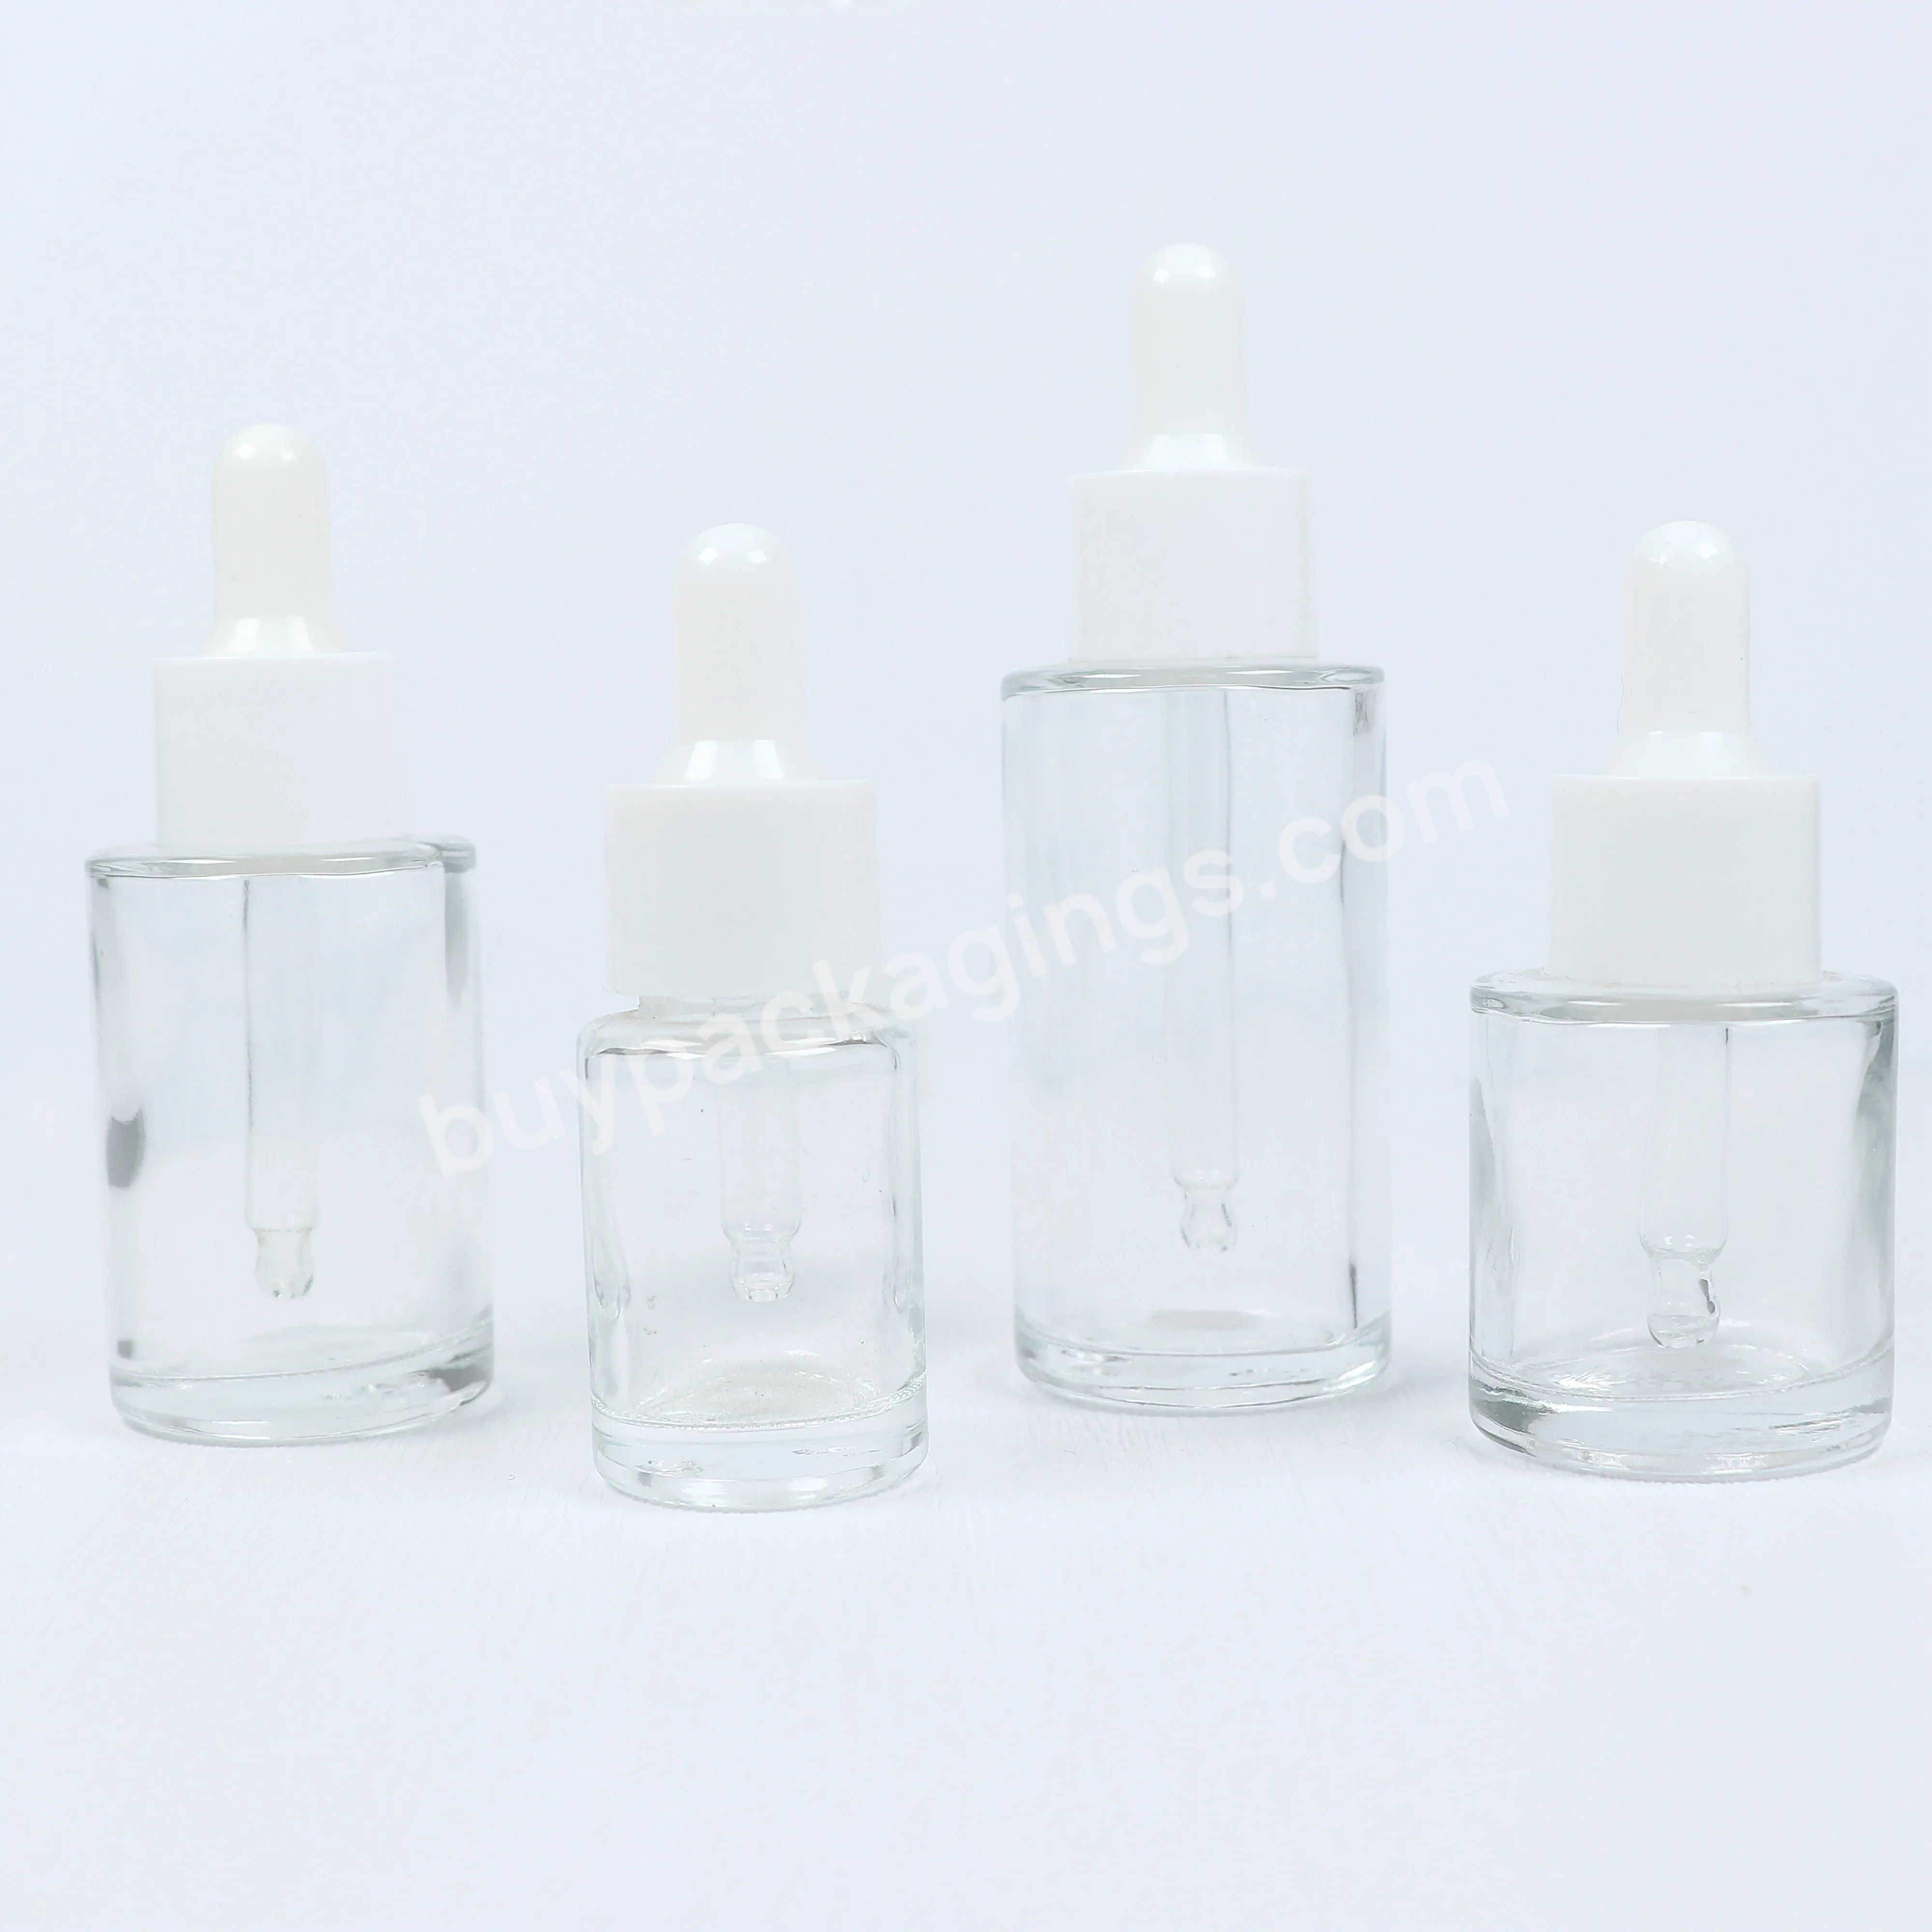 Wholesale 20ml 30ml 50ml Transparent Glass Skincare Packaging Empty Bottles For Body Oil Lotion Glass Dropper Bottles